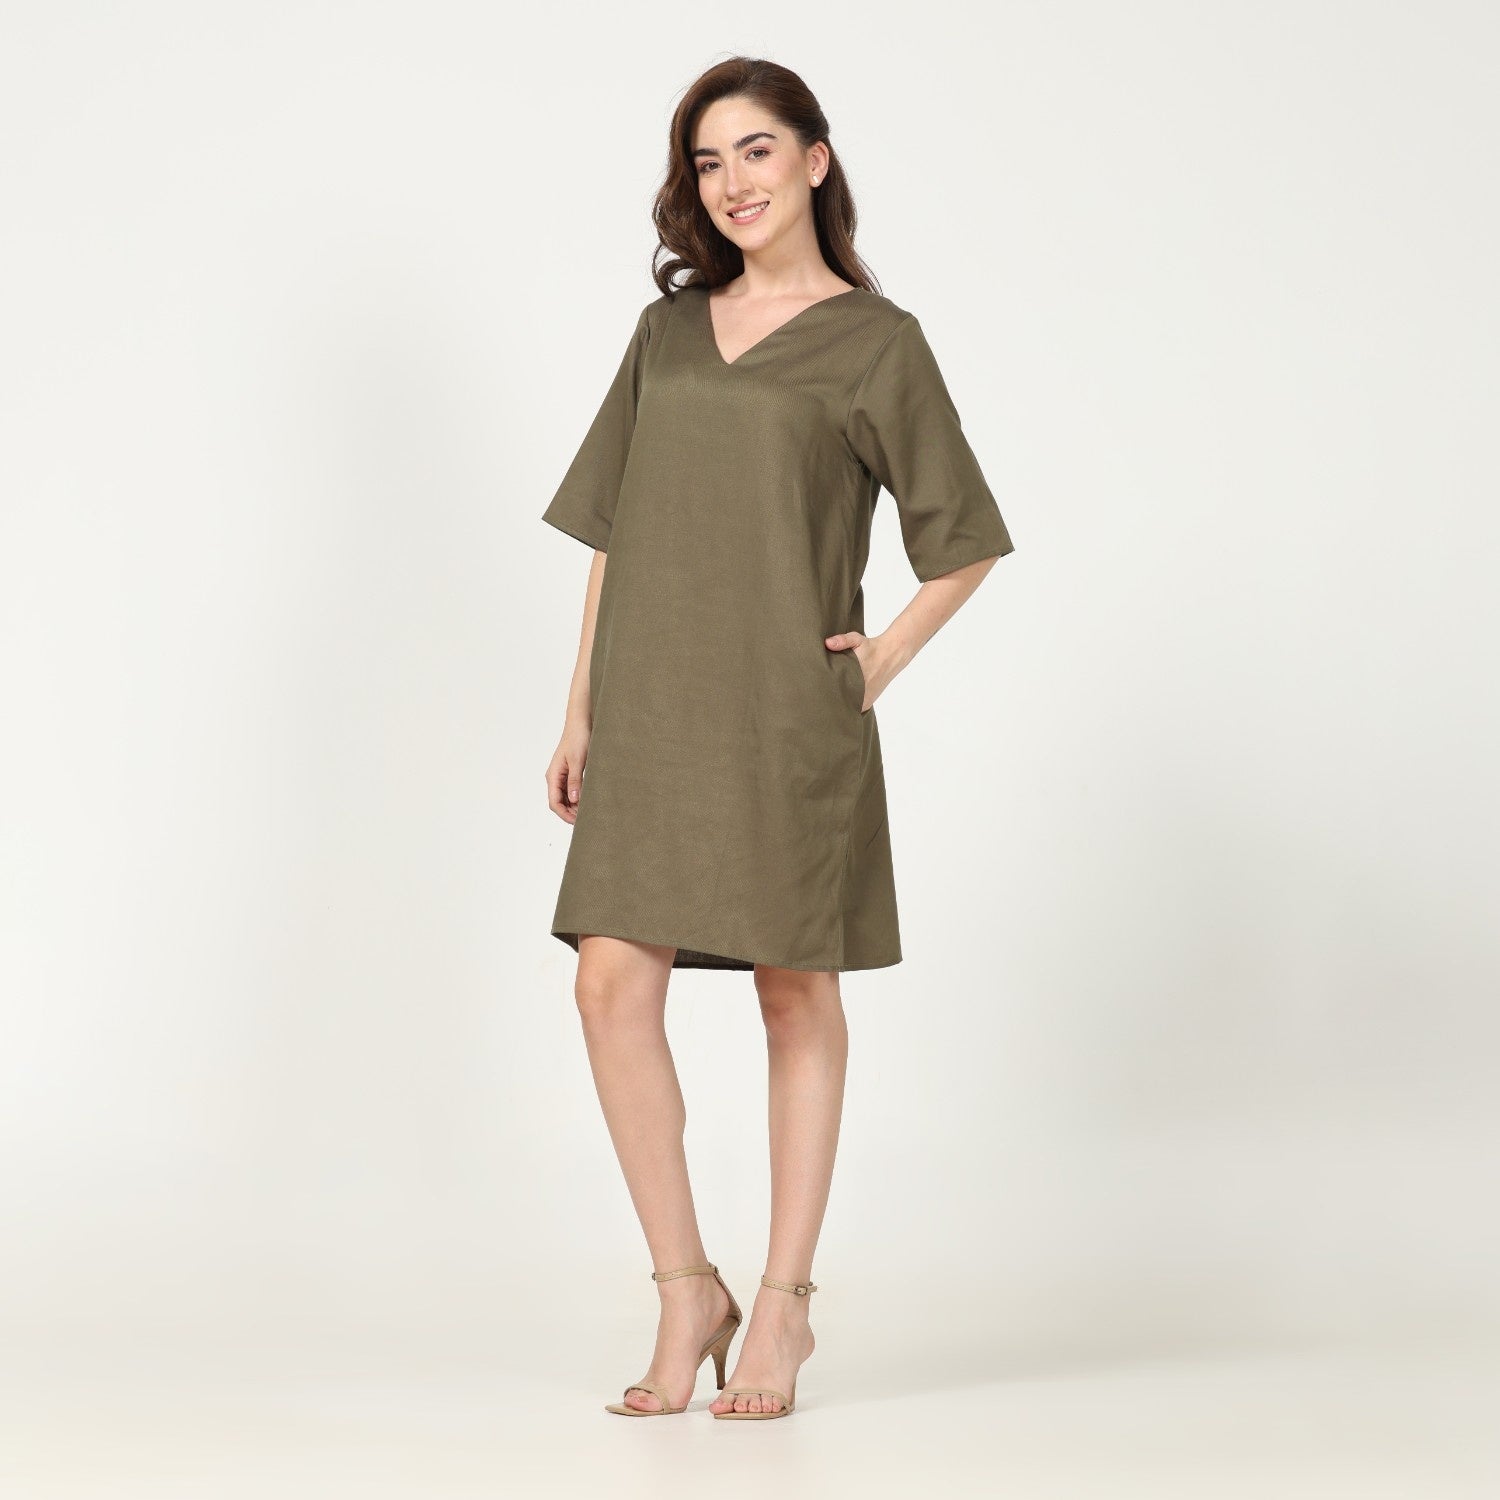 Sack- V Dress - Olive Green